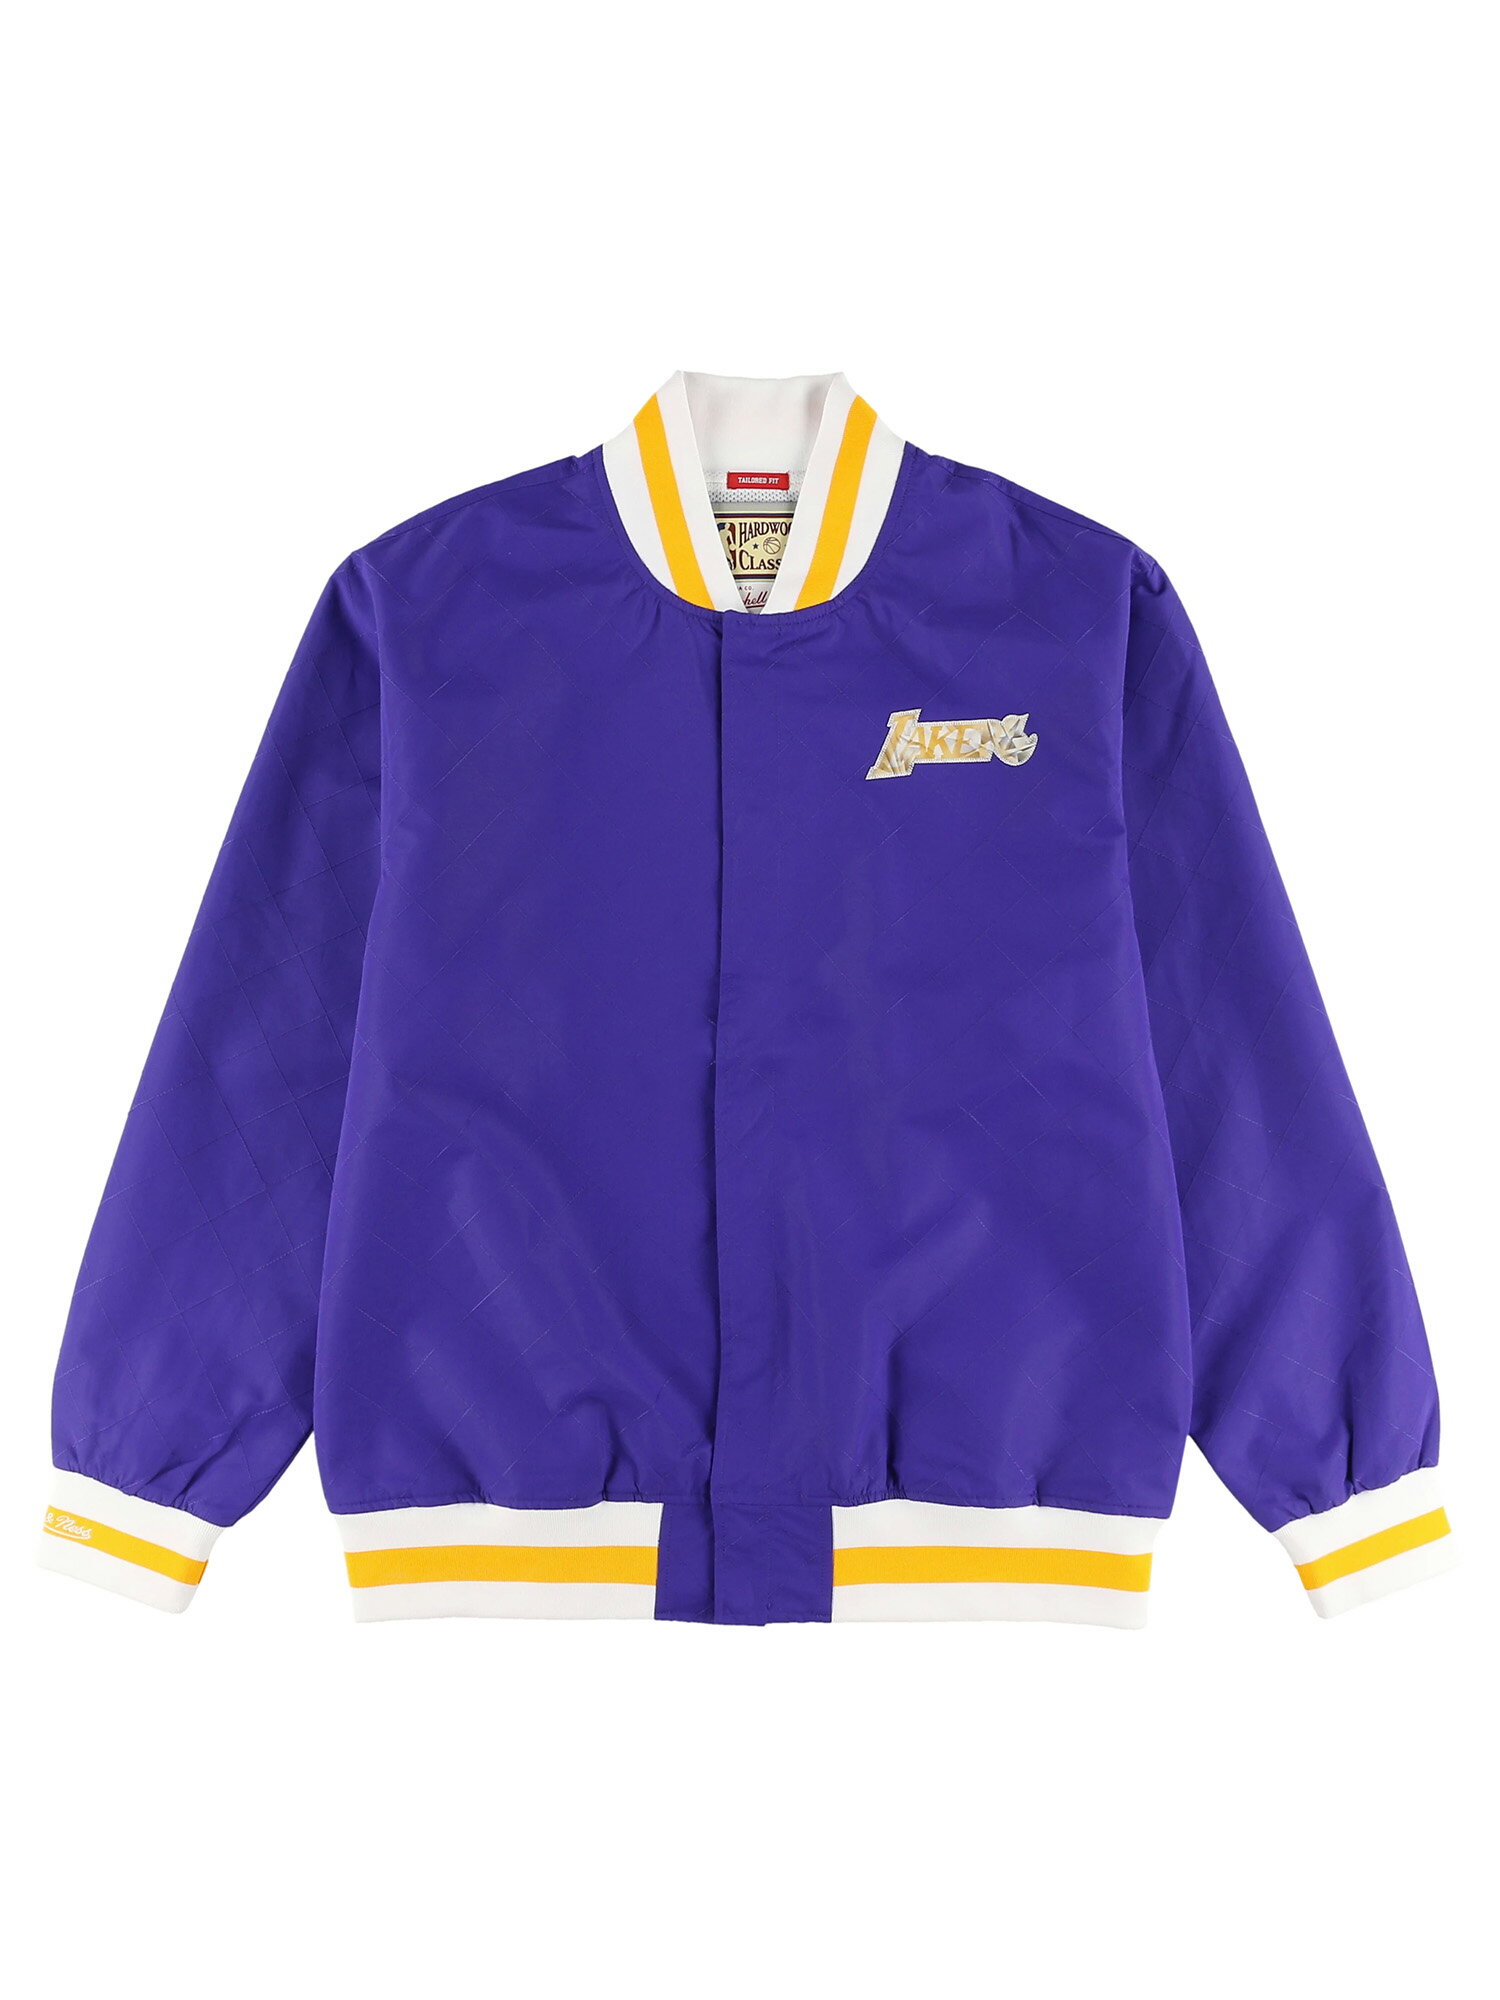 ミッチェル＆ネス ロサンゼルス・レイカーズ 75th アニバーサリー ウォームアップ ジャケット / Los Angeles Lakers 75th Anniversary Warm Up Jacket